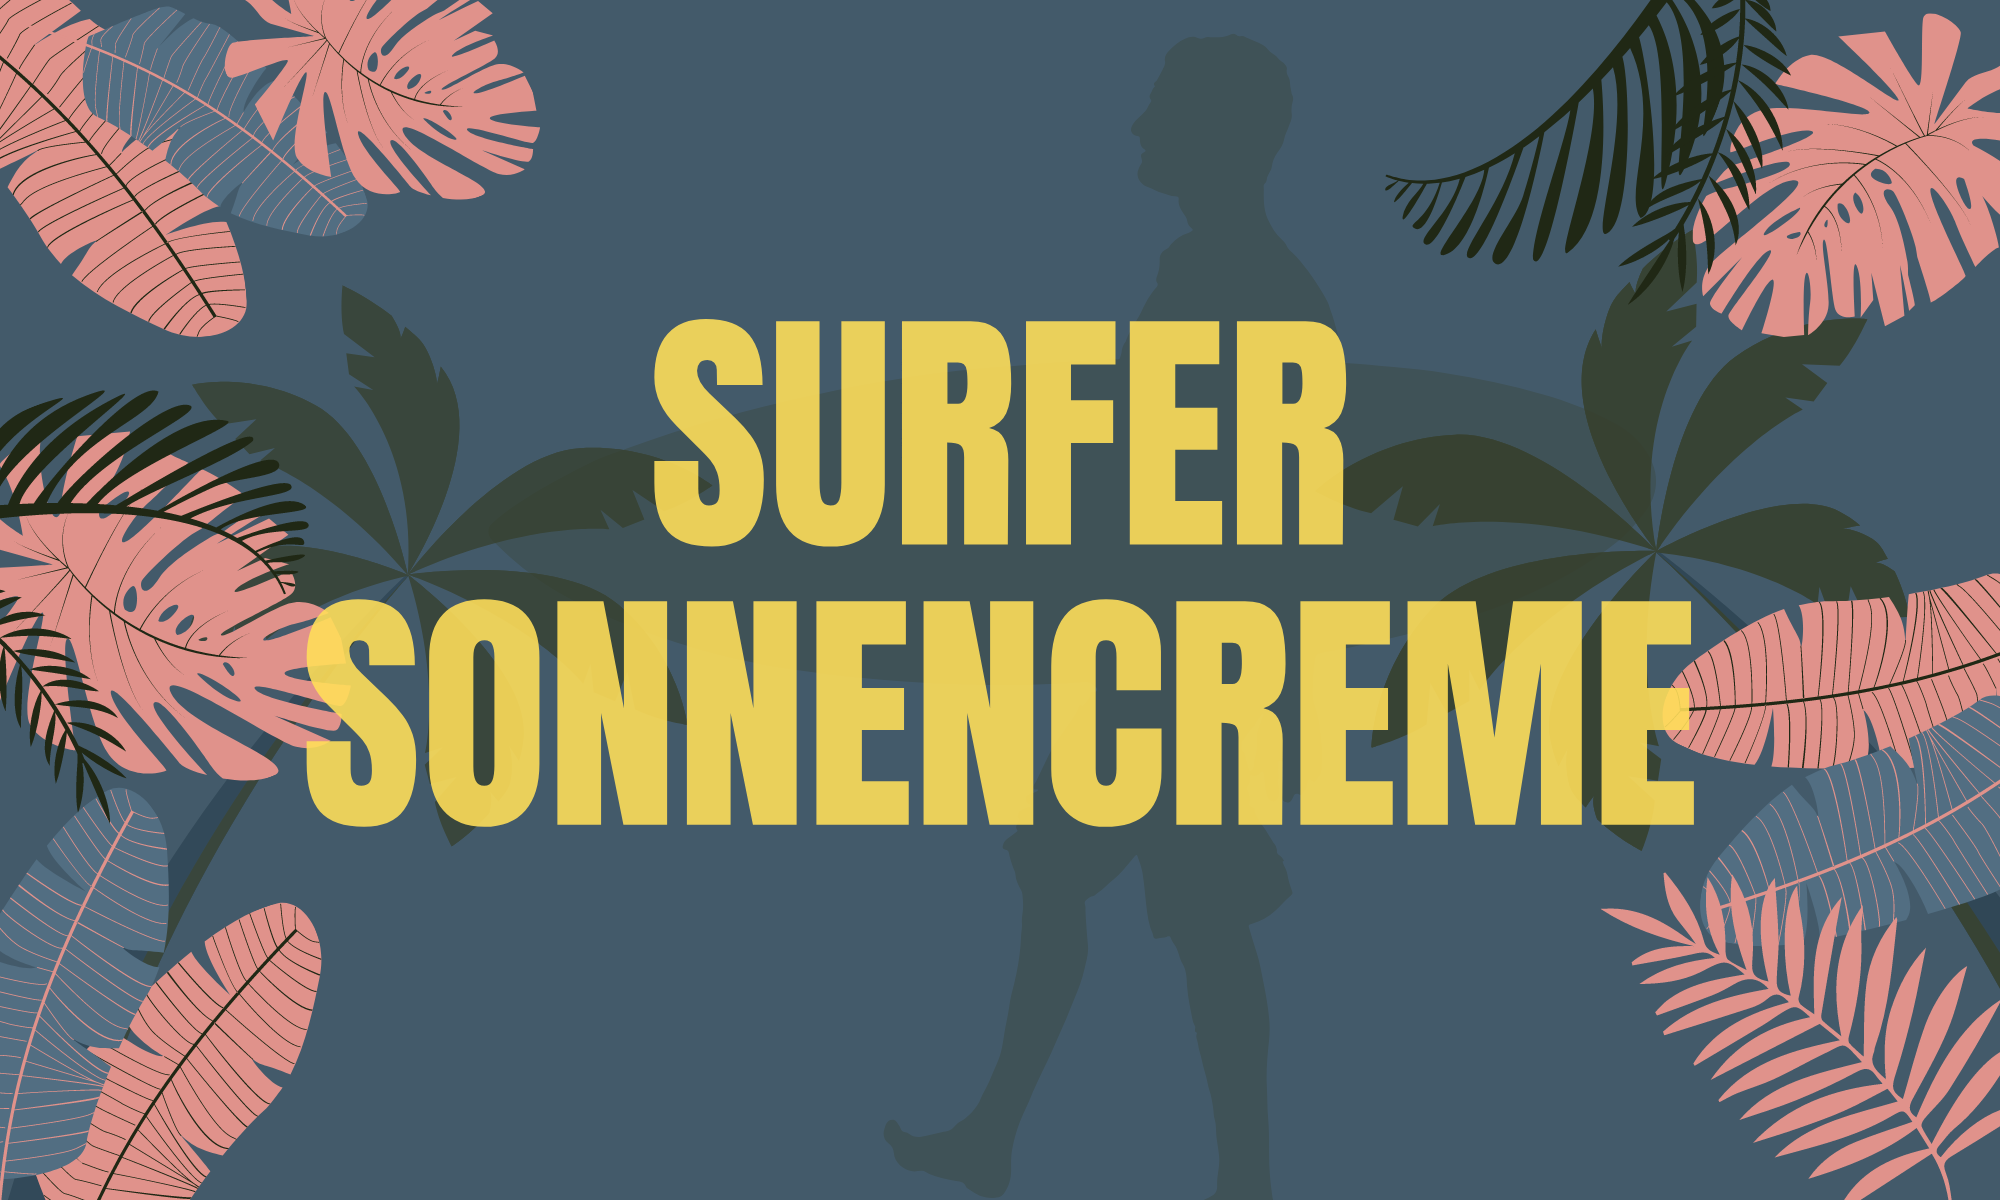 Surfer Sonnencreme Textzug und Grafiken von einem Surfer und Blätter